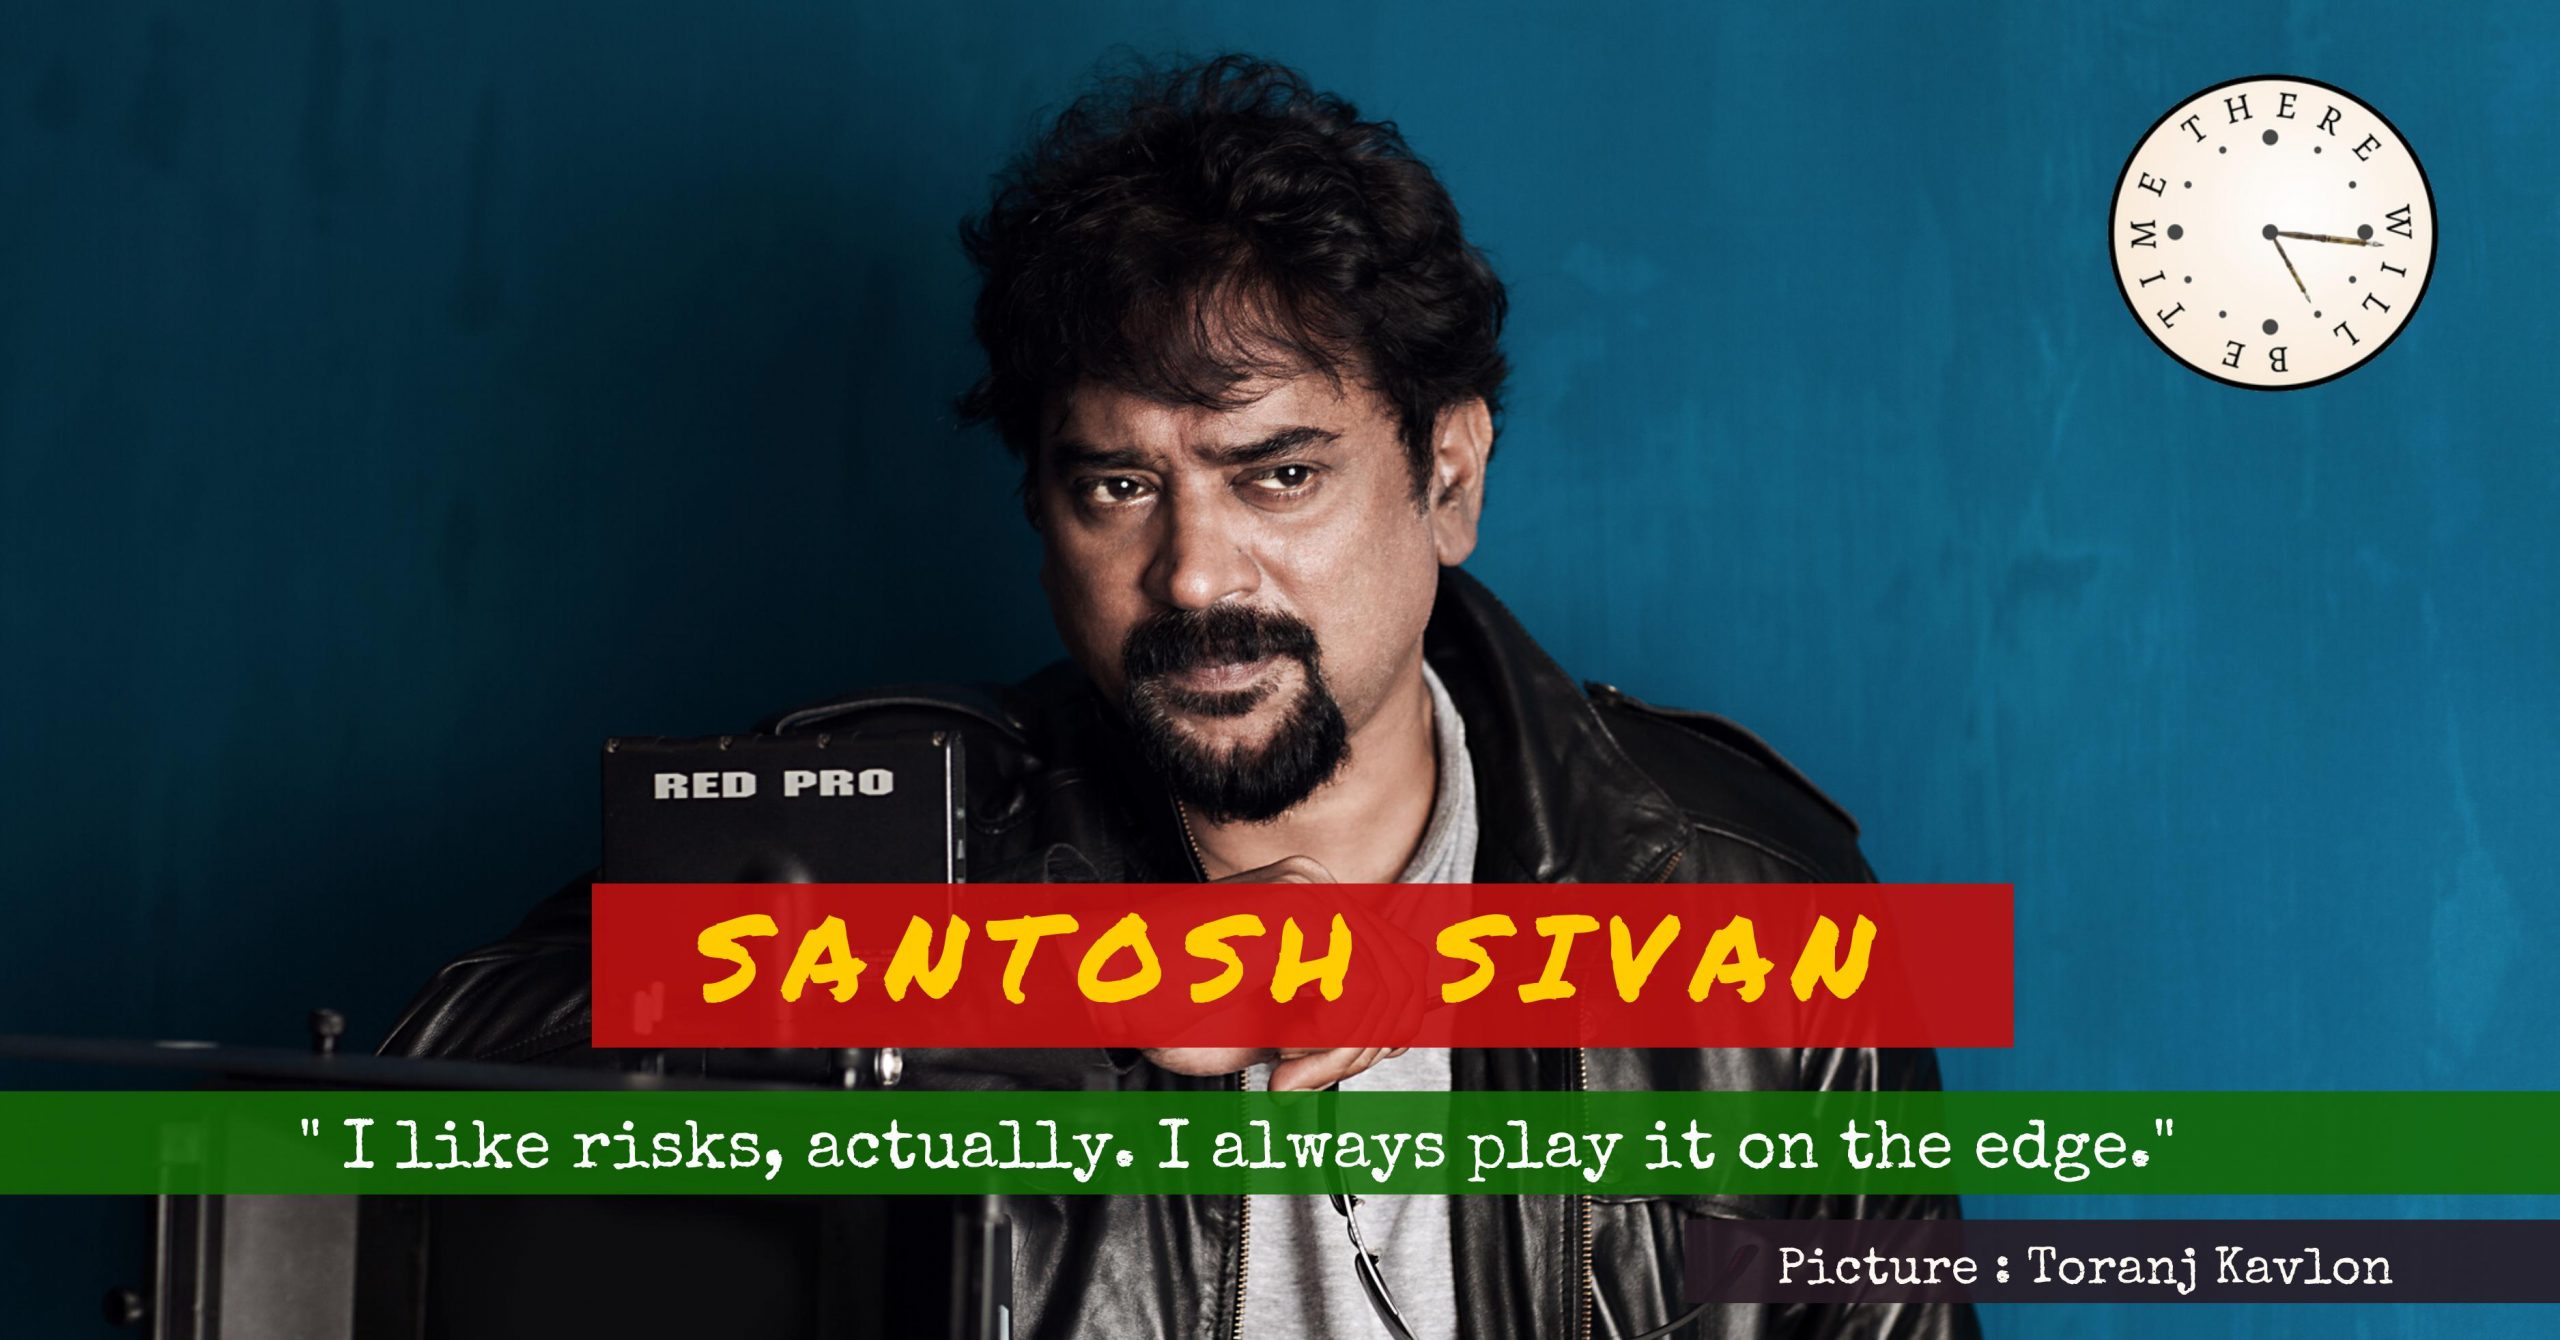 Santosh Sivan header image